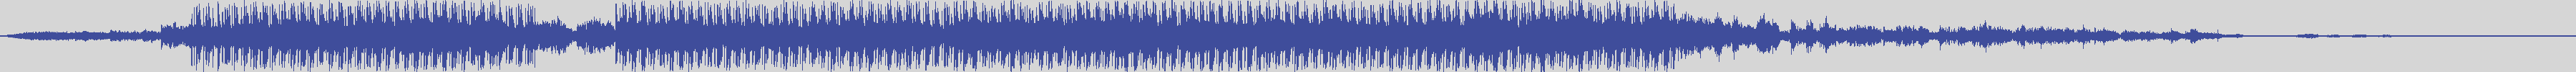 upr [UPR082] Black Egg - Unclean [Original Mix] audio wave form